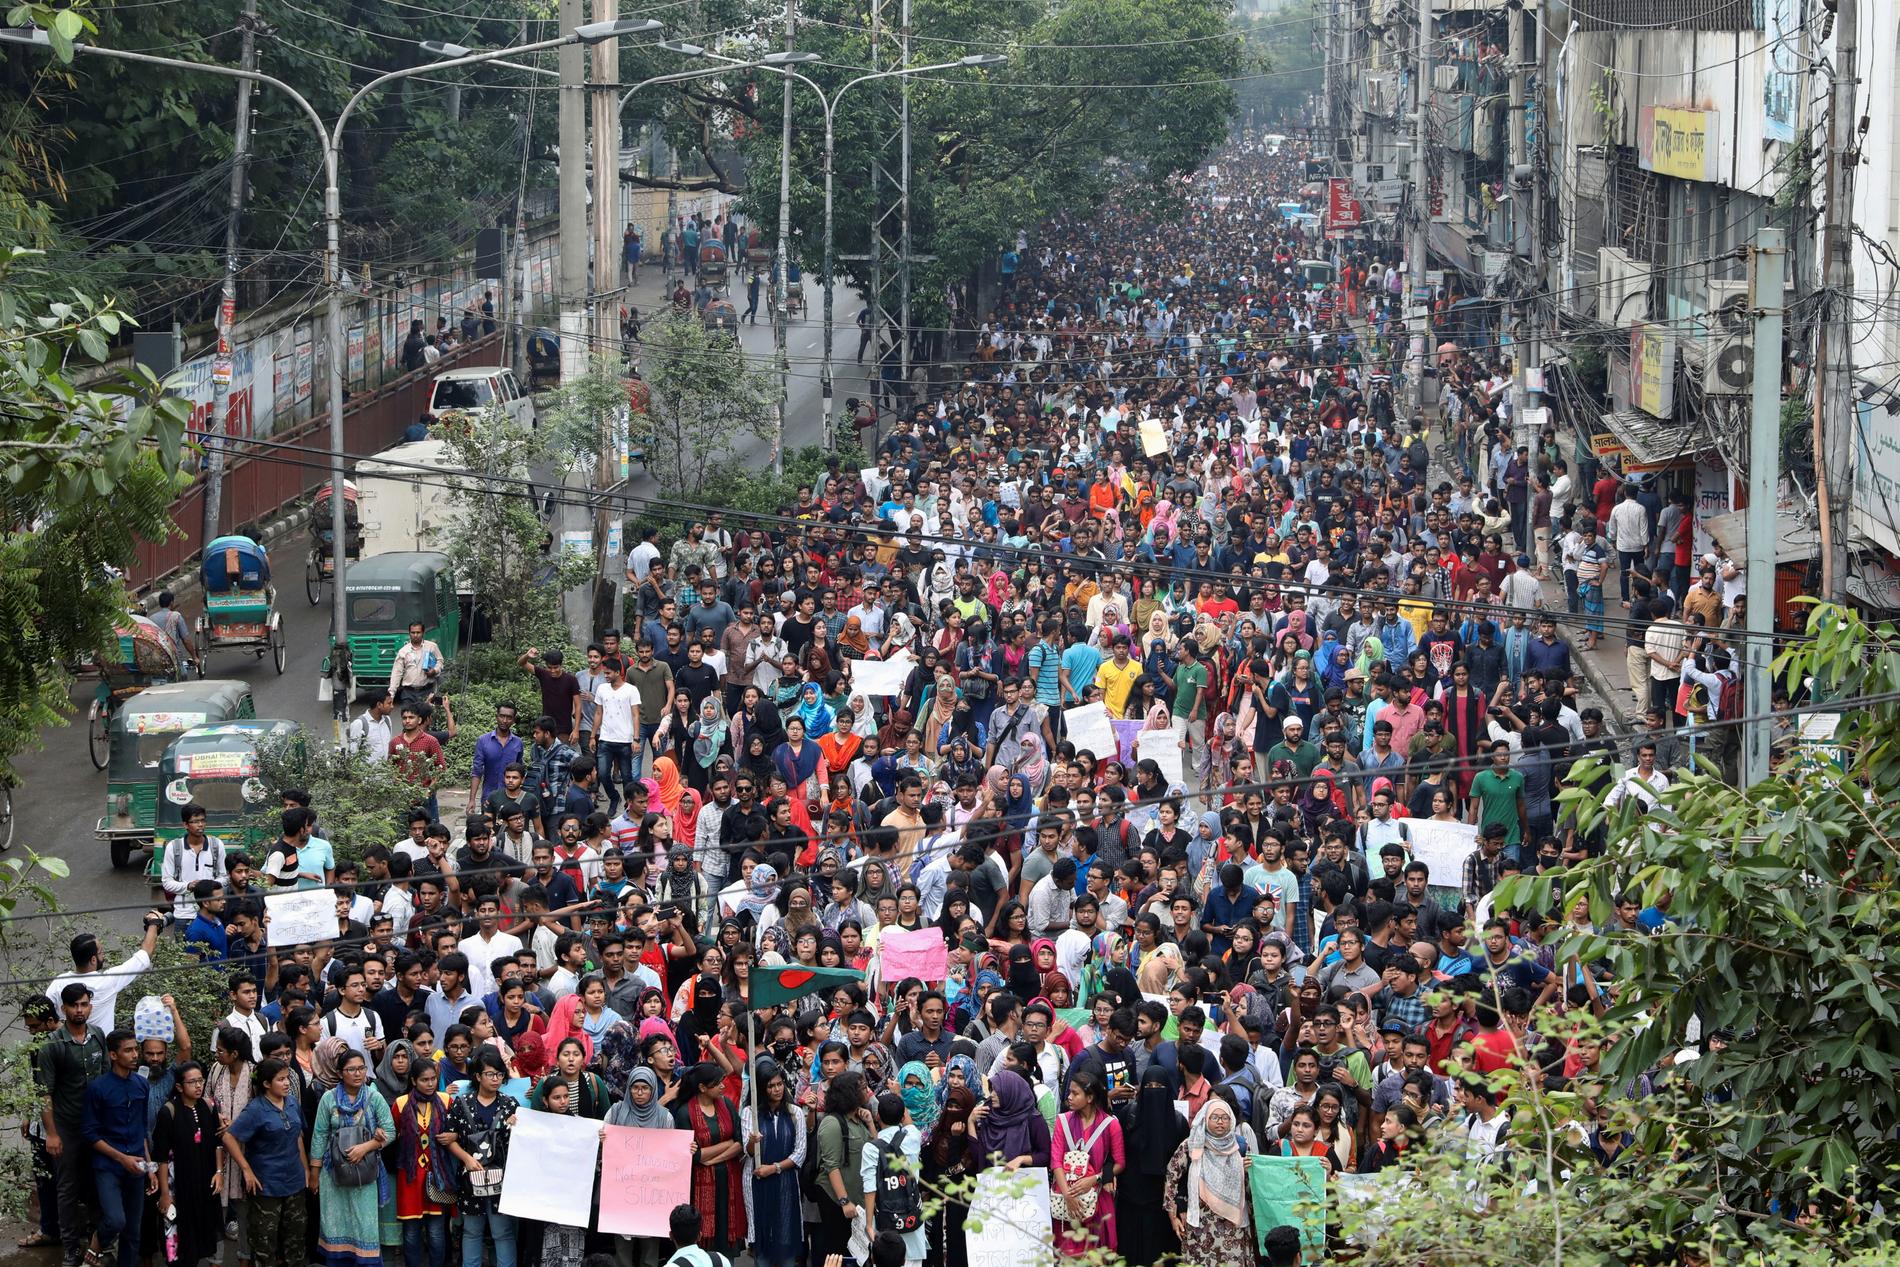 Tusentals studenter har samlats för att protestera. 